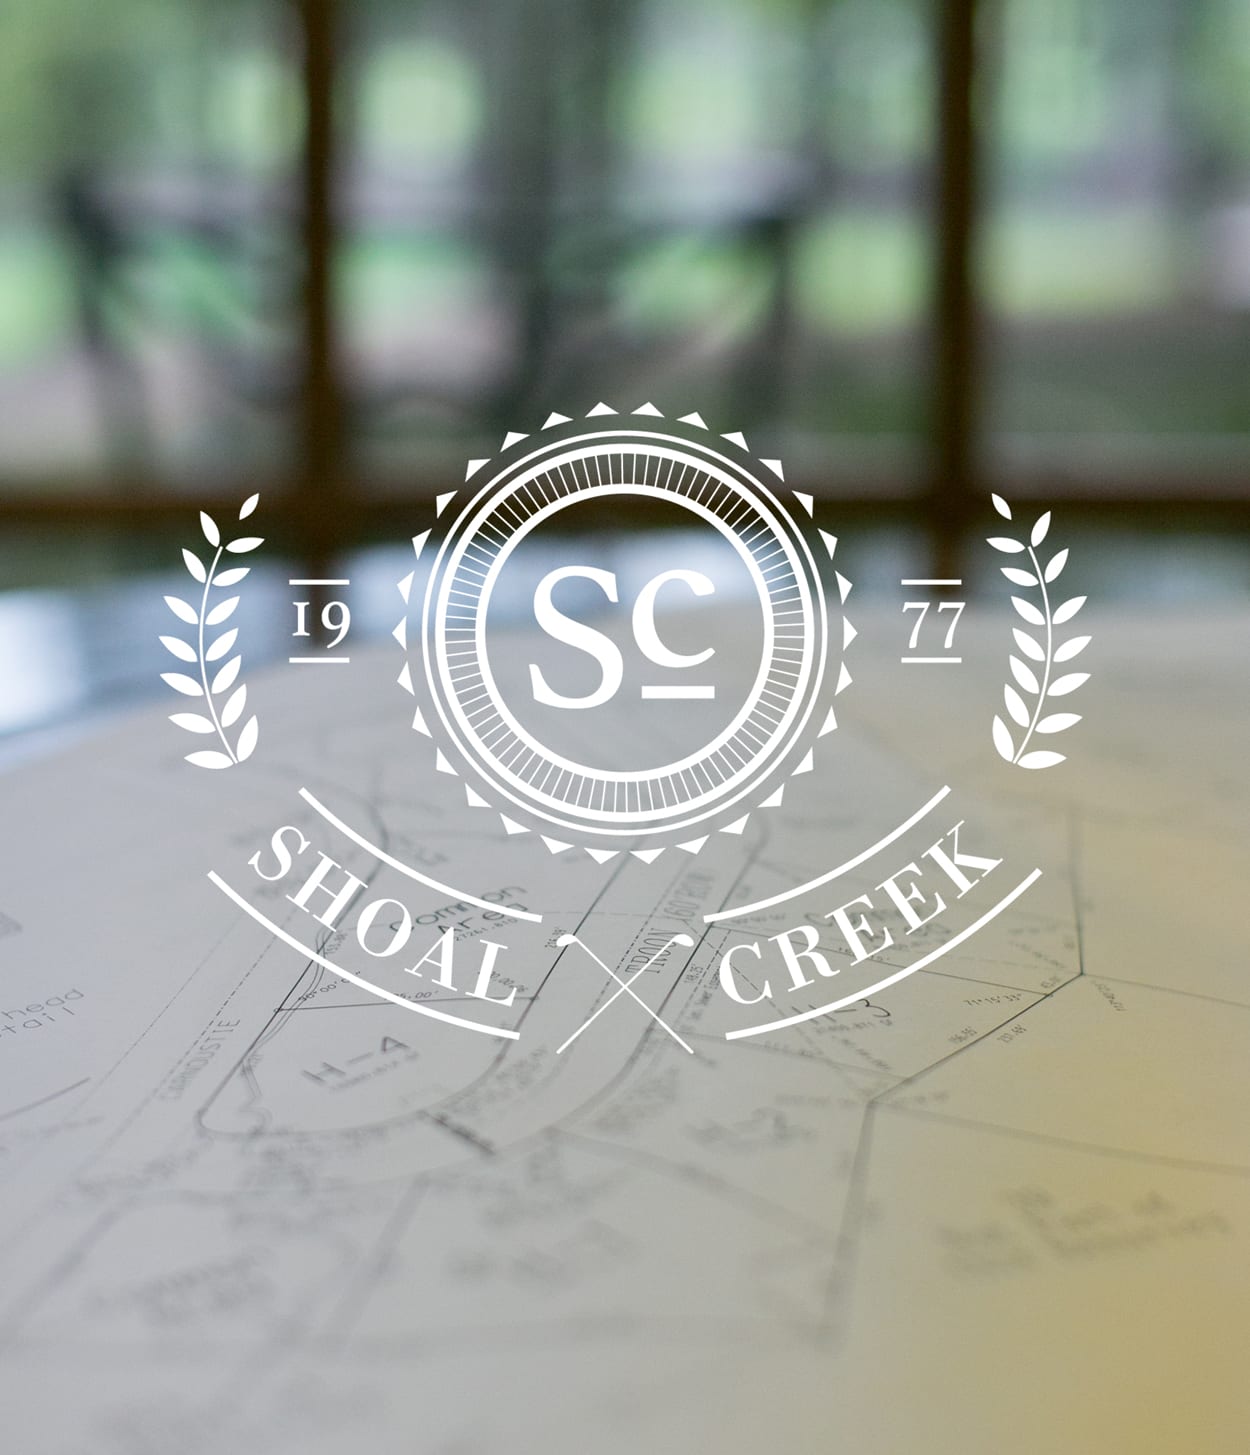 About Shoal Creek